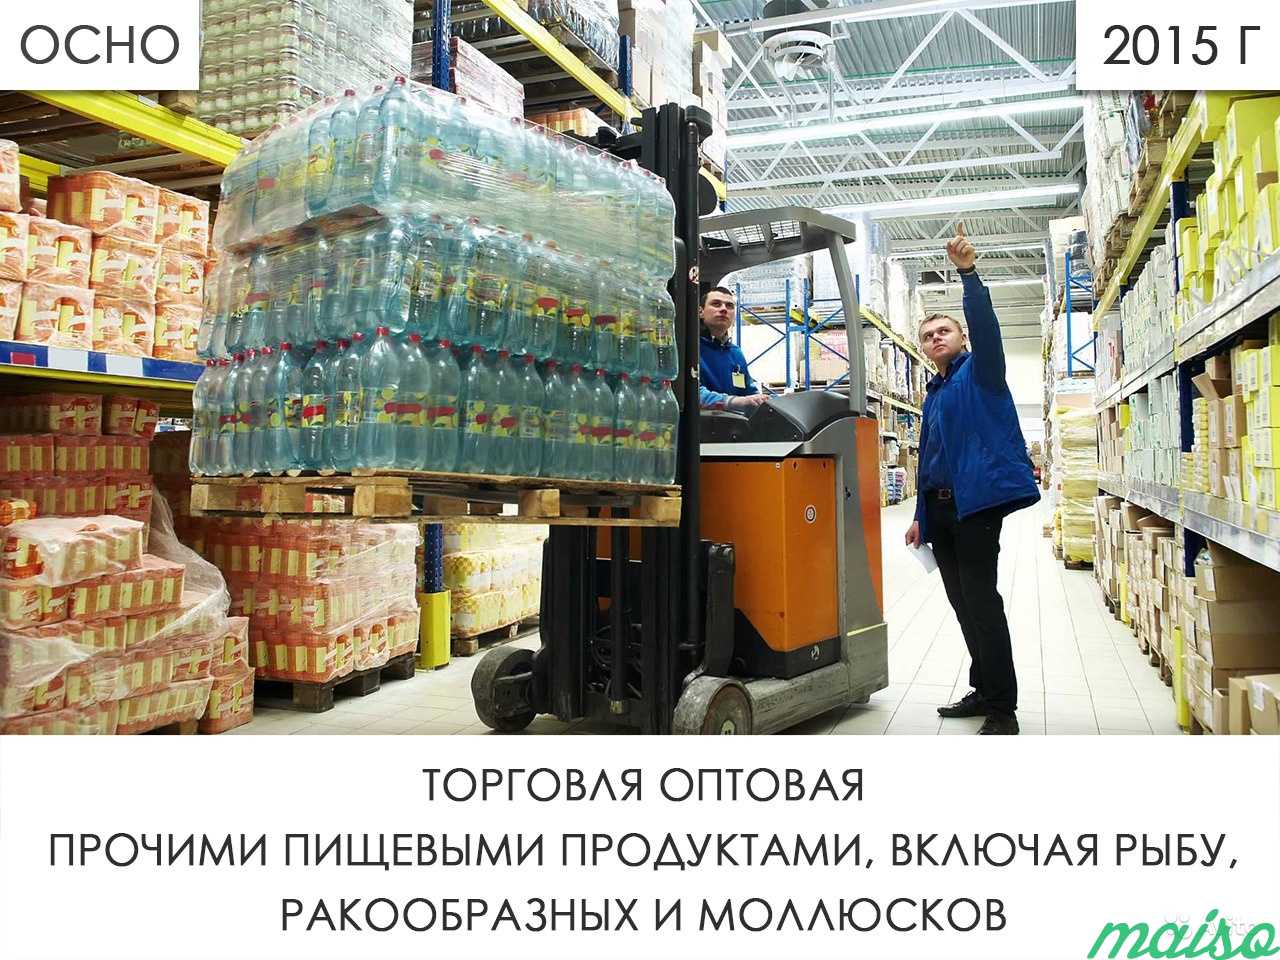 Ооо 2015 г. торговля опт пр-и пищевыми продуктами в Москве. Фото 1